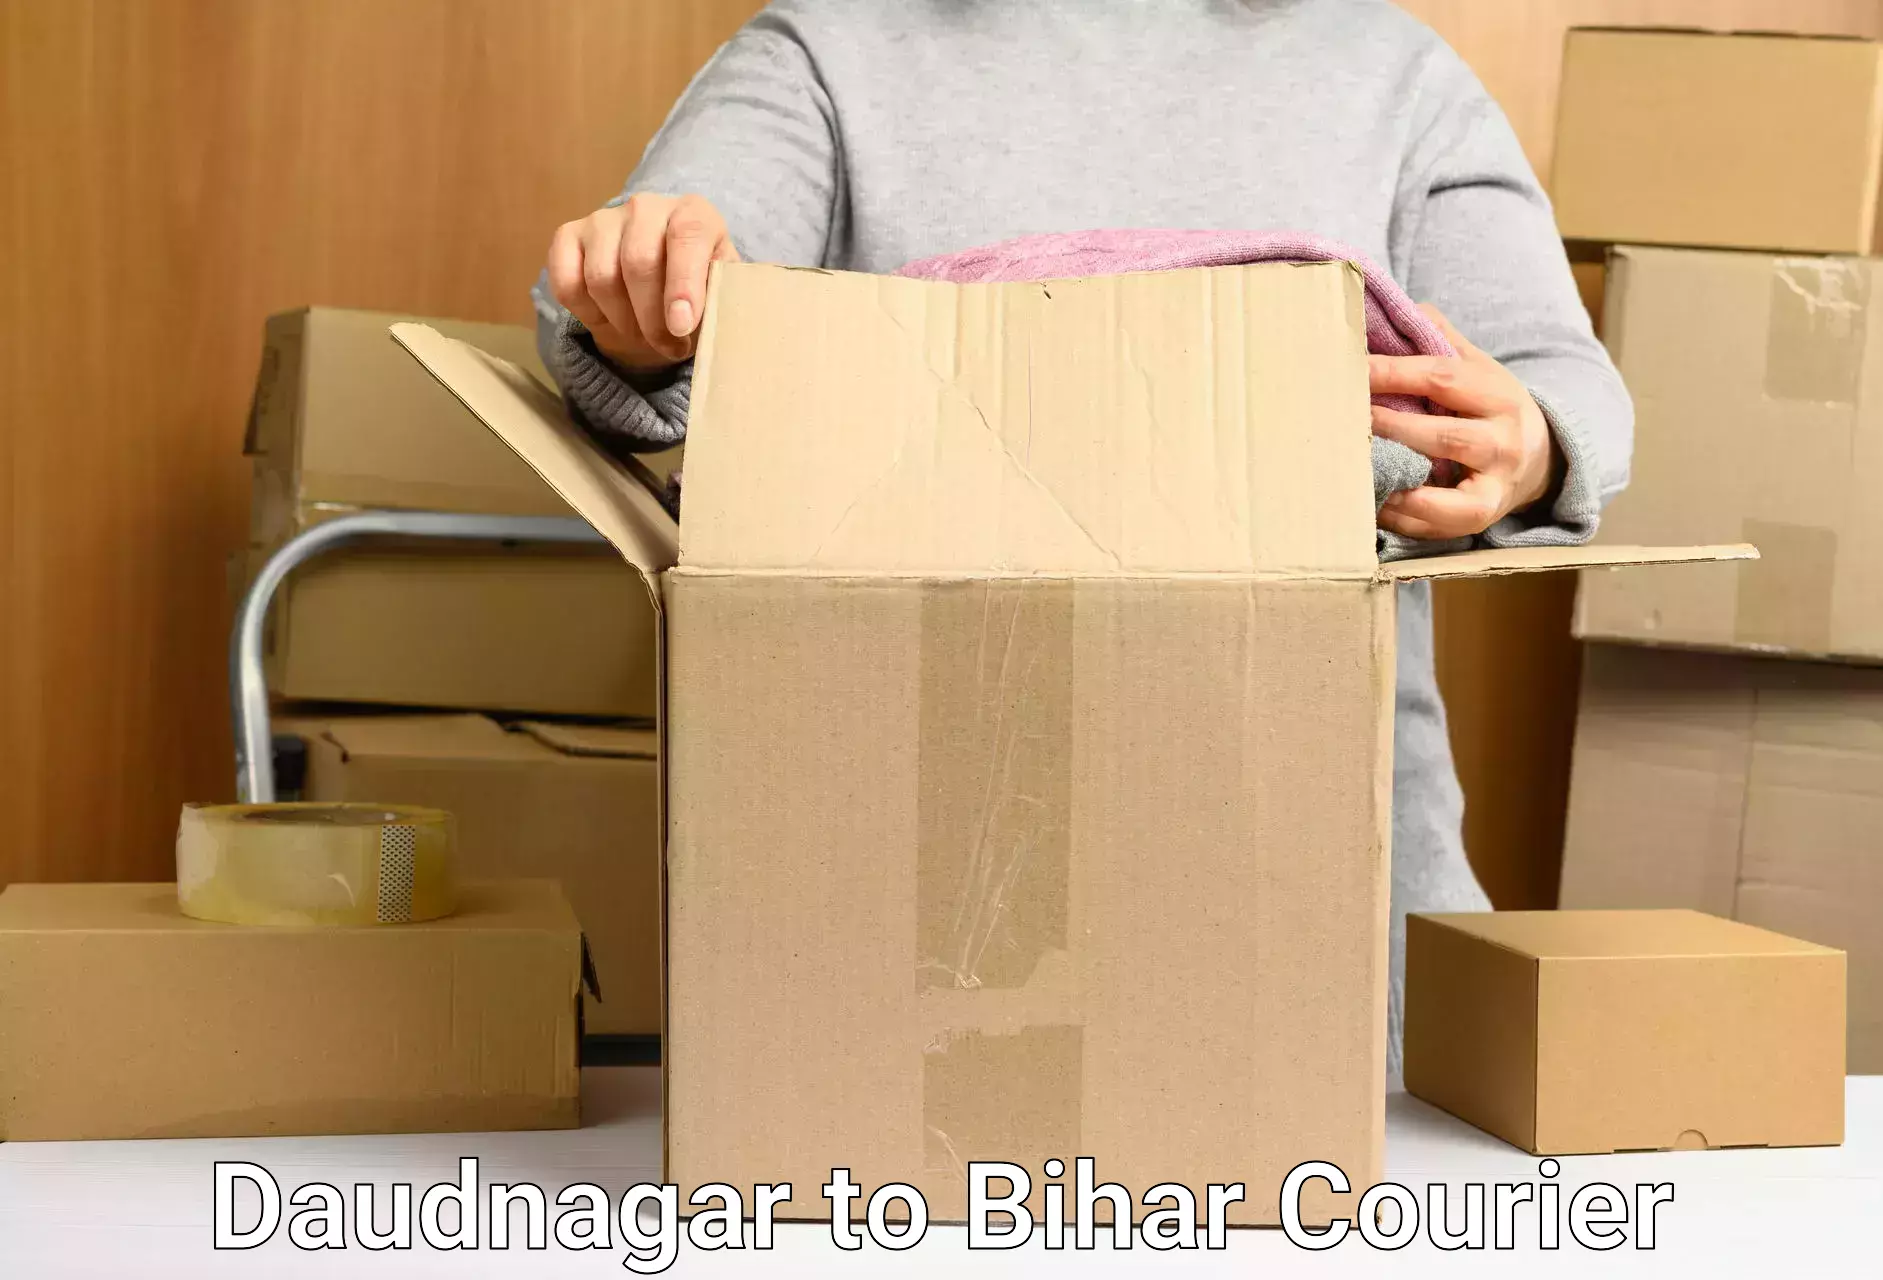 Full-service courier options Daudnagar to Patna